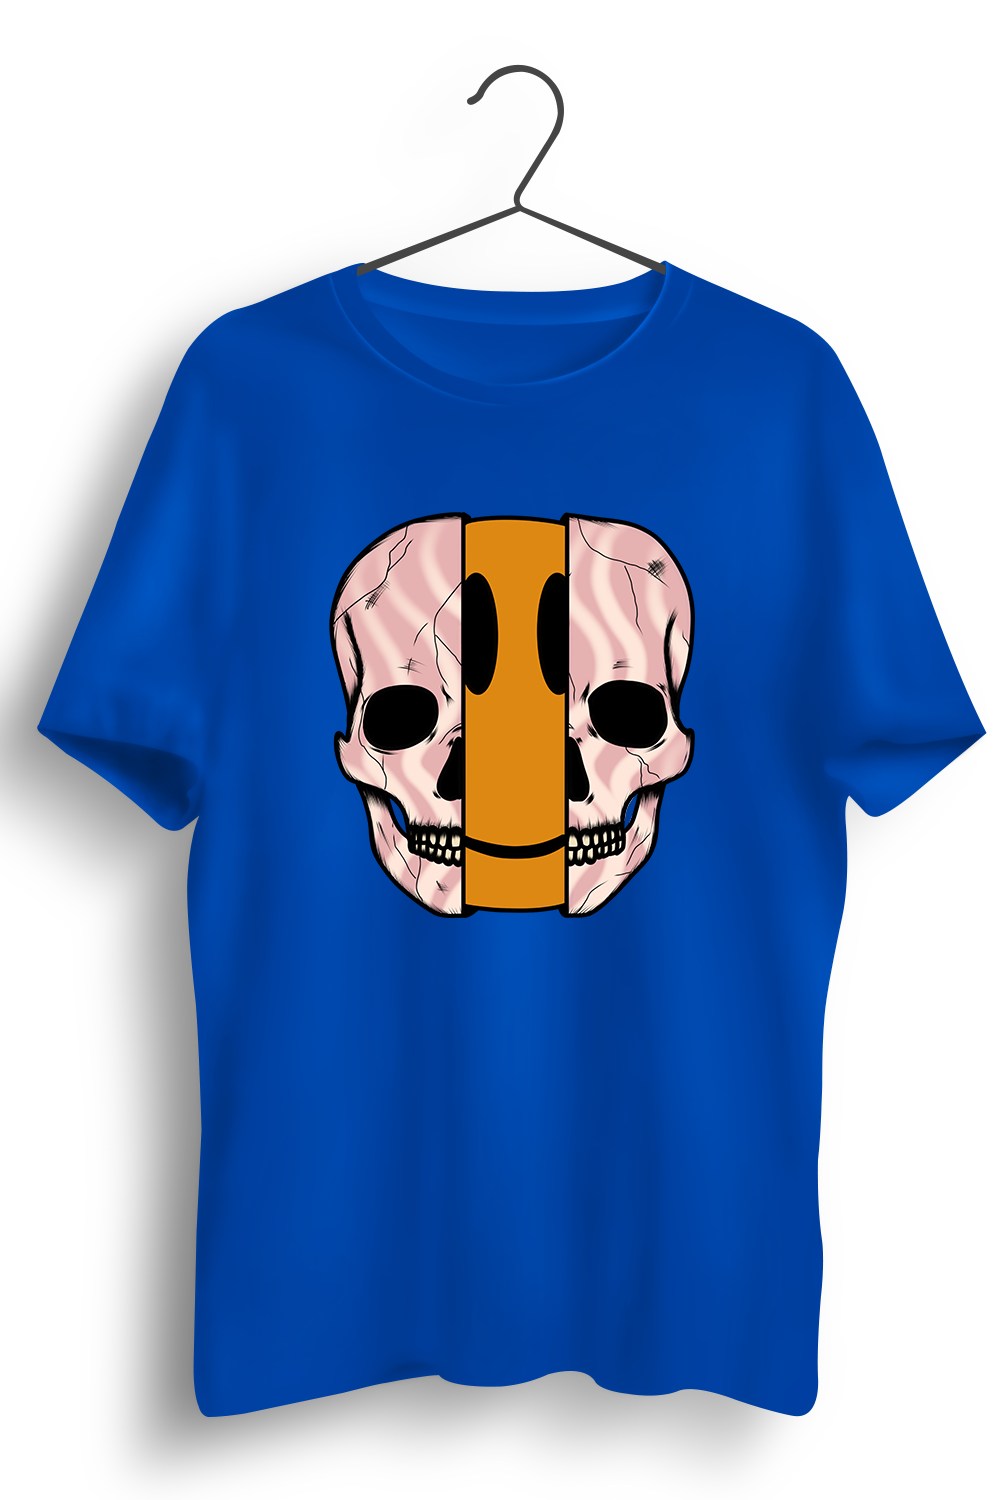 Paytm Exclusive - Dis Skull Graphic Printed Blue Tshirt